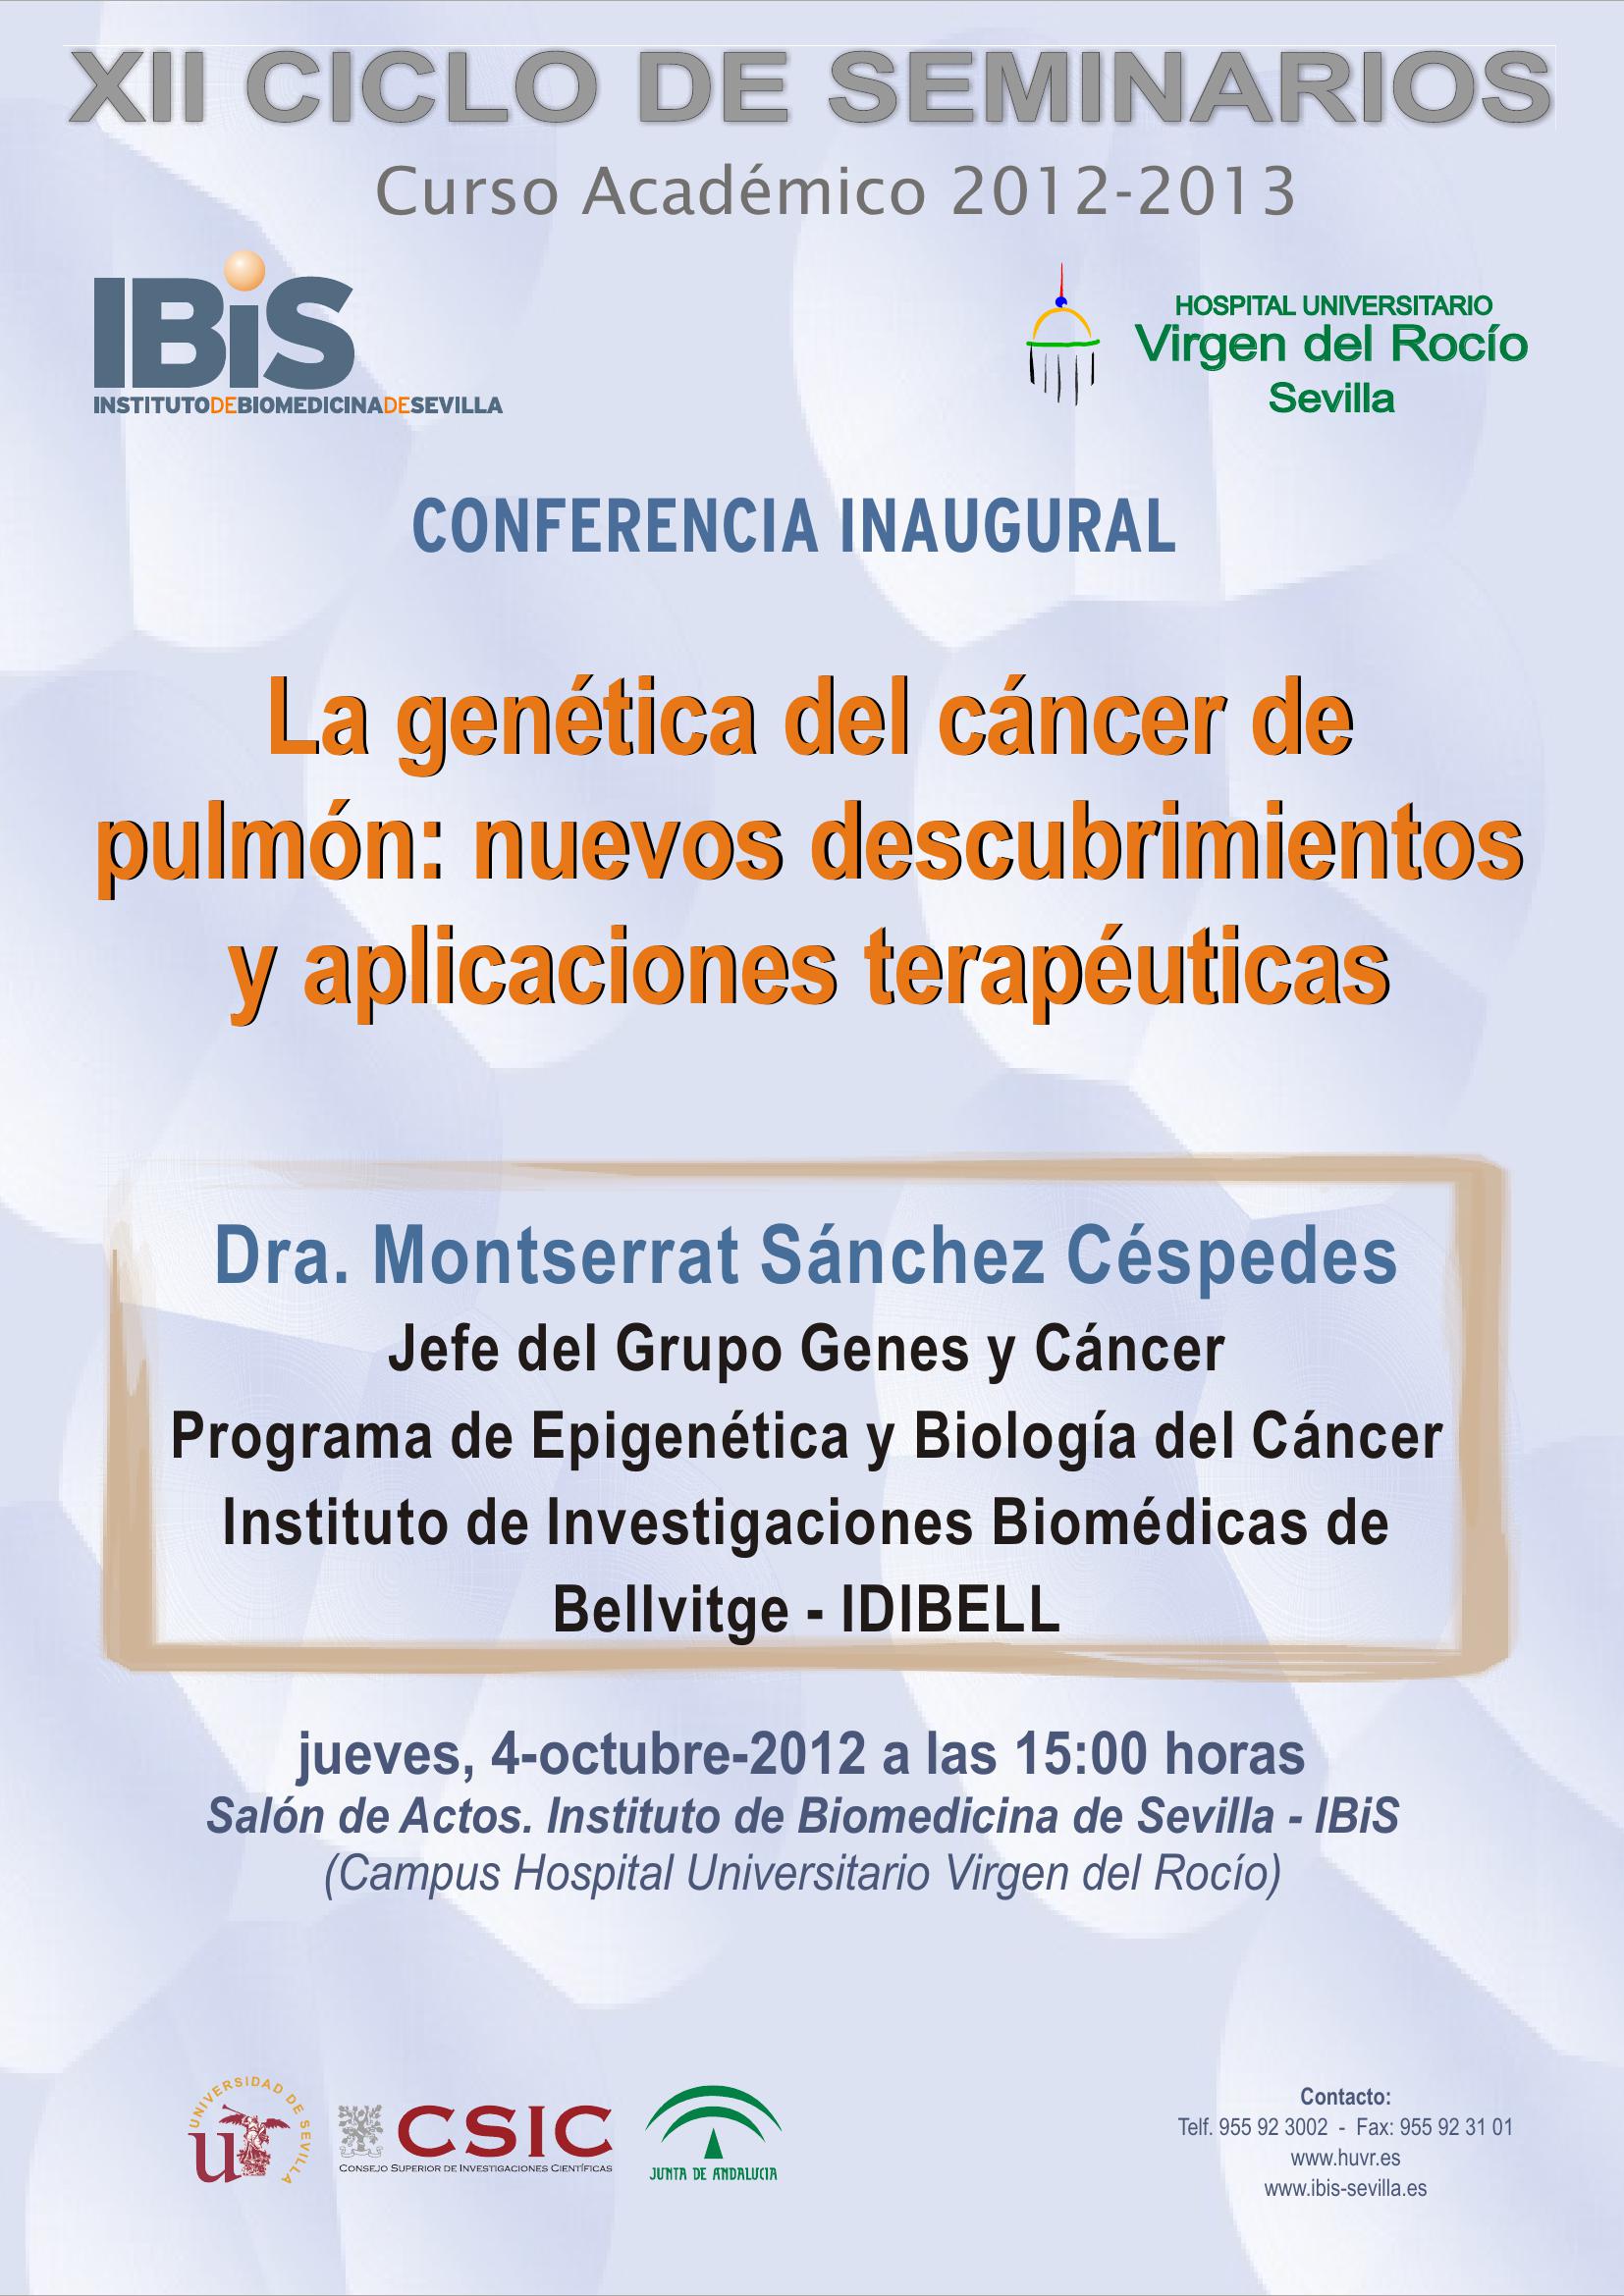 Poster: La genética del cáncer de pulmón: nuevos descubrimientos y aplicaciones terapéuticas.